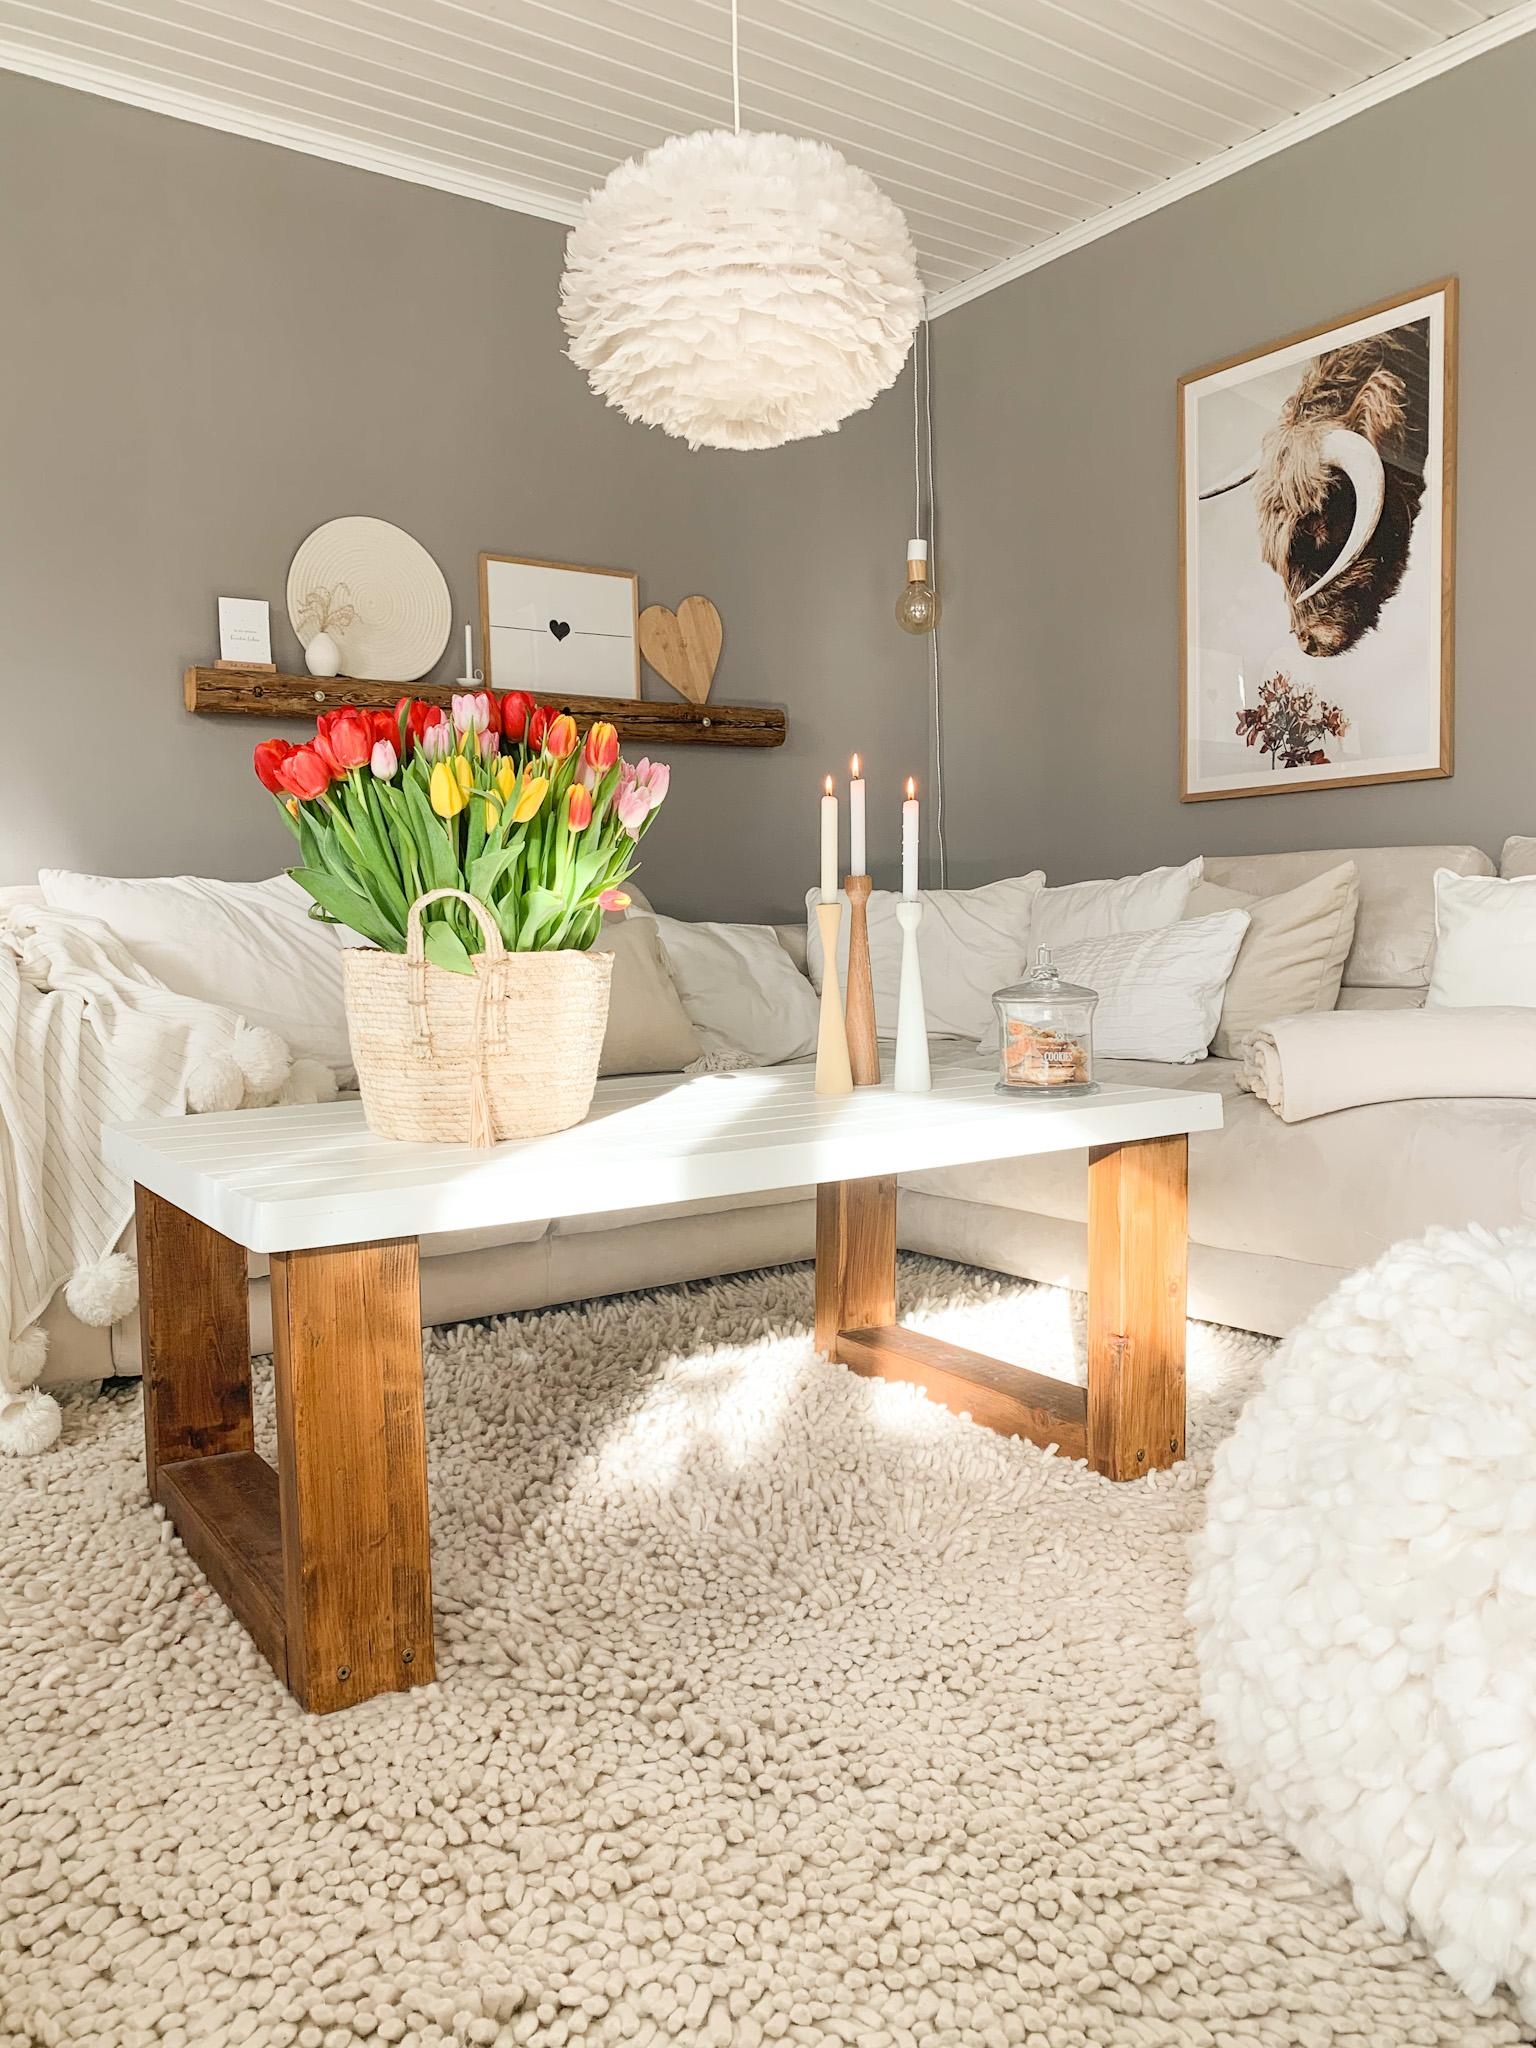 Der #frühlings kommt #tulpenliebe#wohnzimmer#wohnen#blumen#couchstyle#dekoideen#tulpen#freshflowers